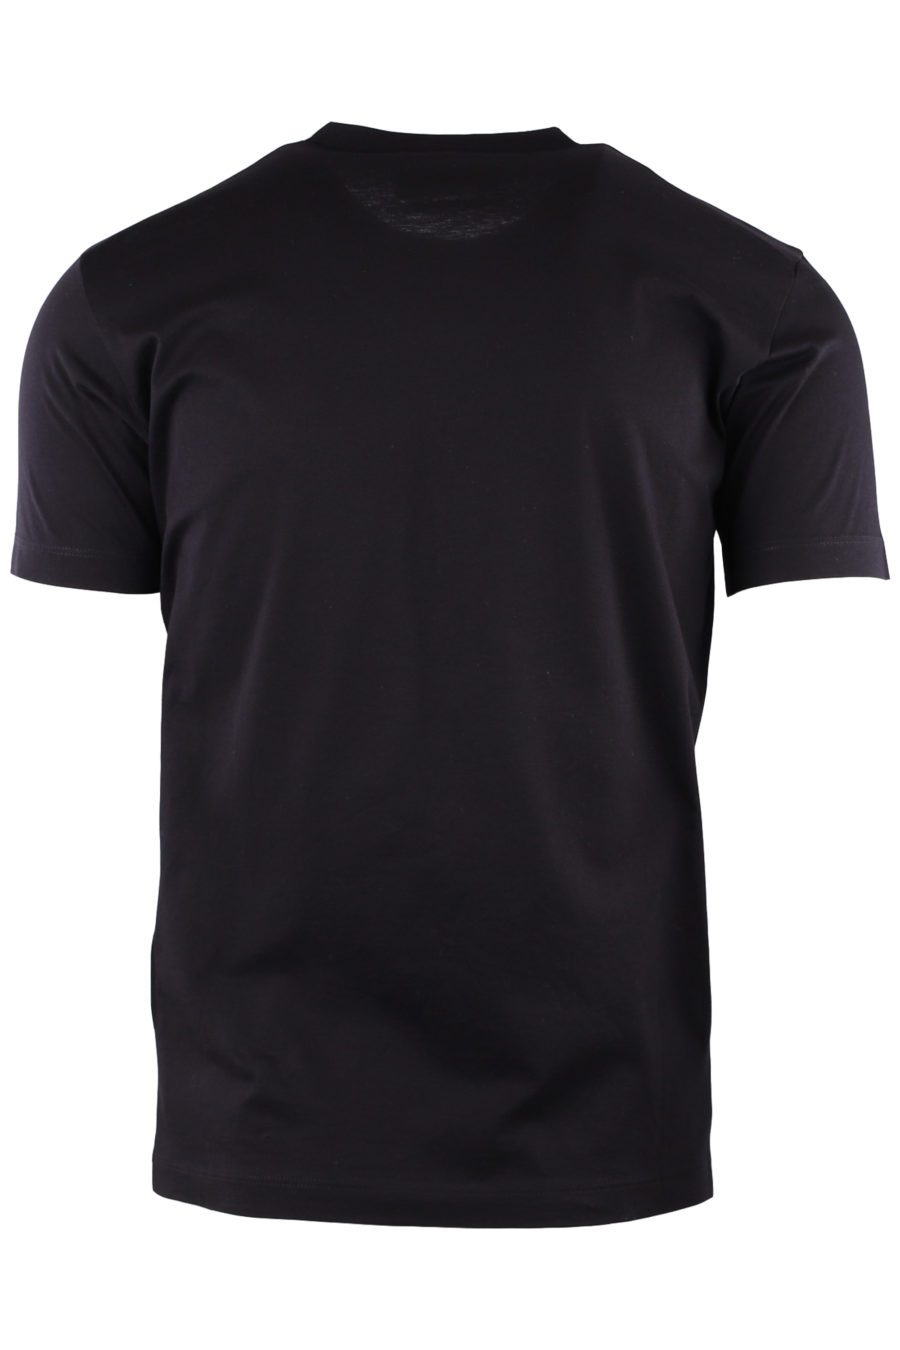 Schwarzes T-Shirt mit weißem kalligrafischem Logo - de0f0aa62a42ef7db43014e54c990424a309eb12